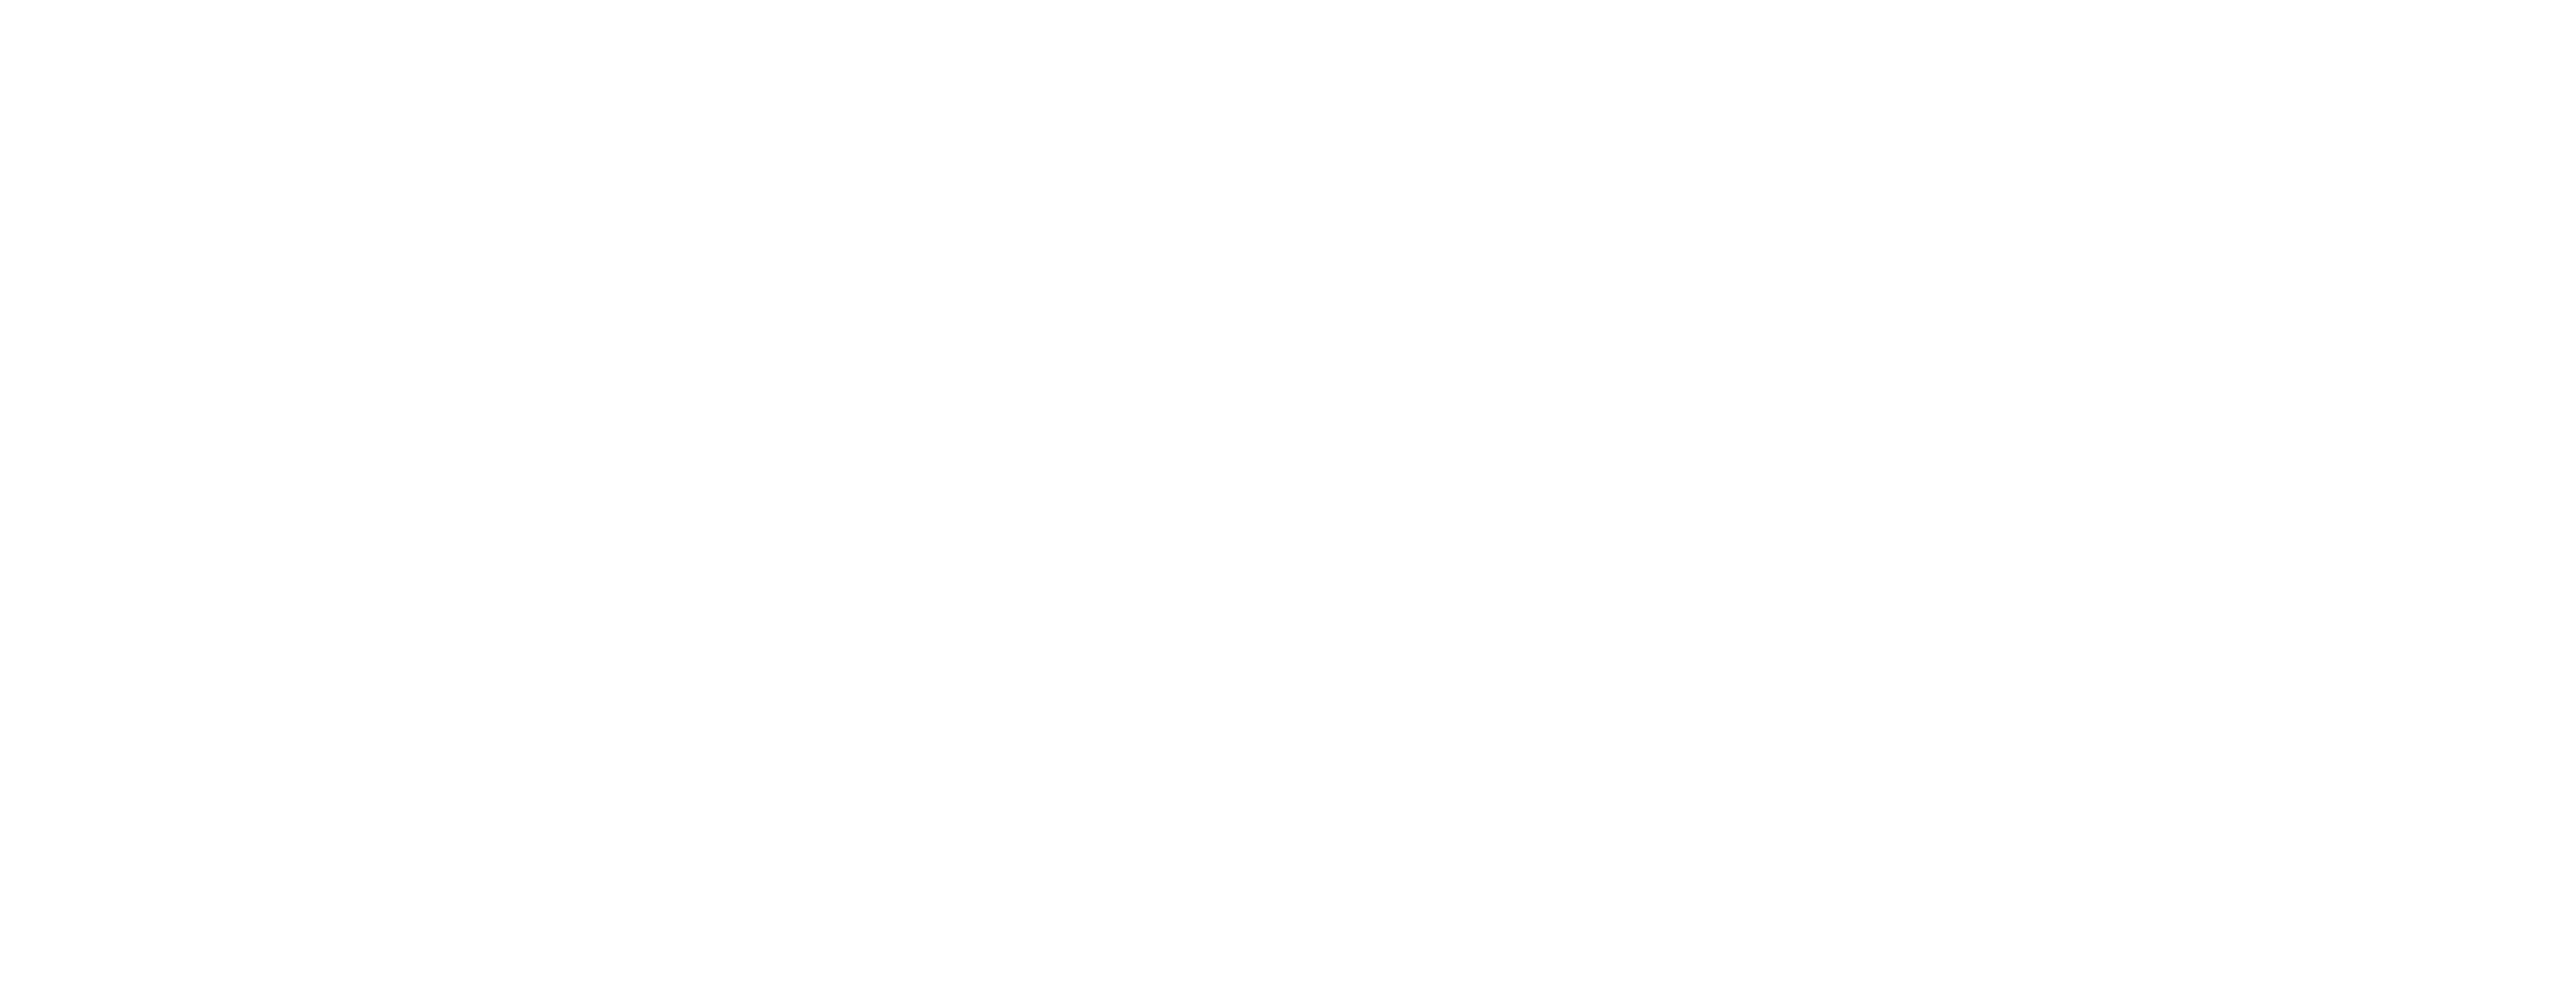 Forever Summer: Hamptons logo